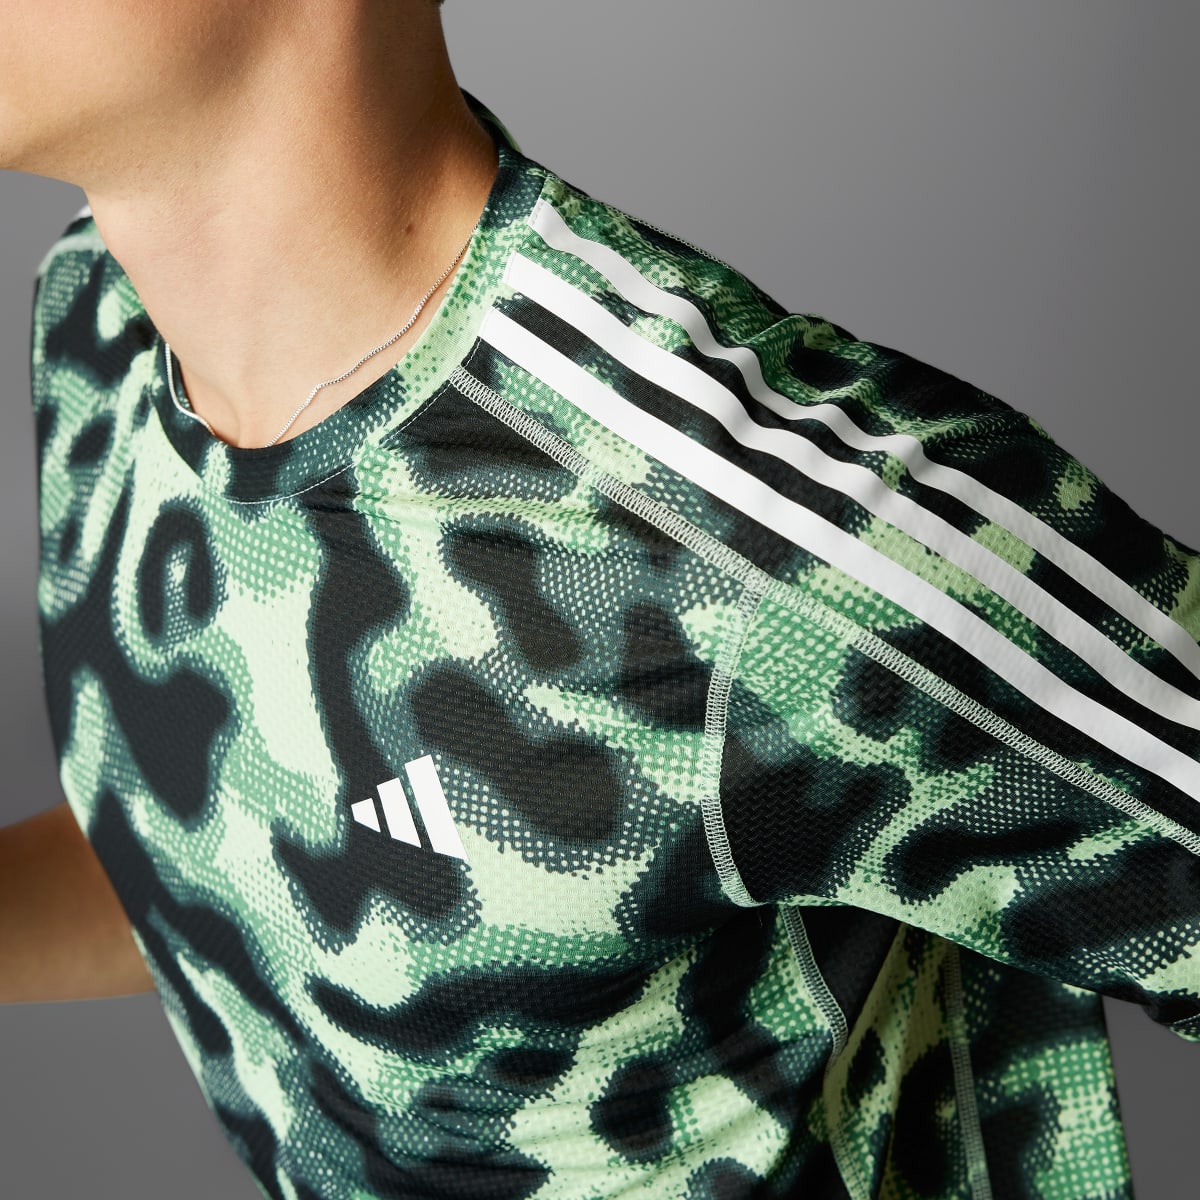 Adidas Own the Run 3-Stripes Allover Print T-Shirt. 4